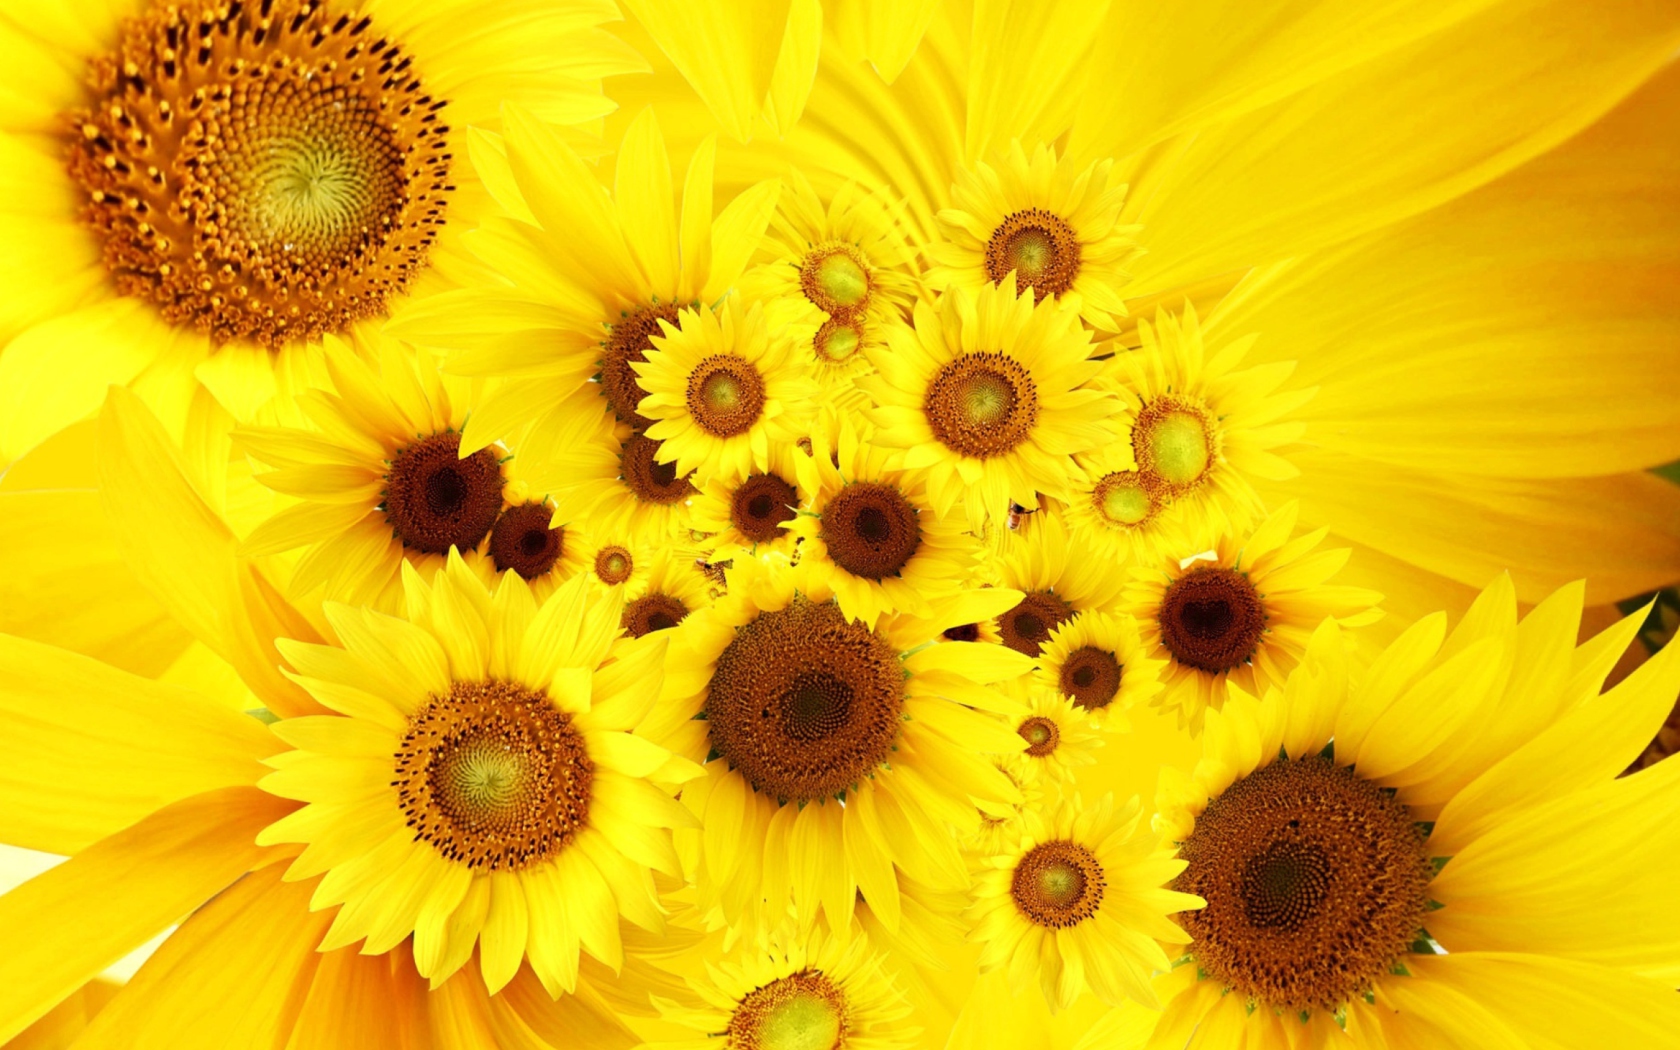 Обои Cool Sunflowers 1680x1050